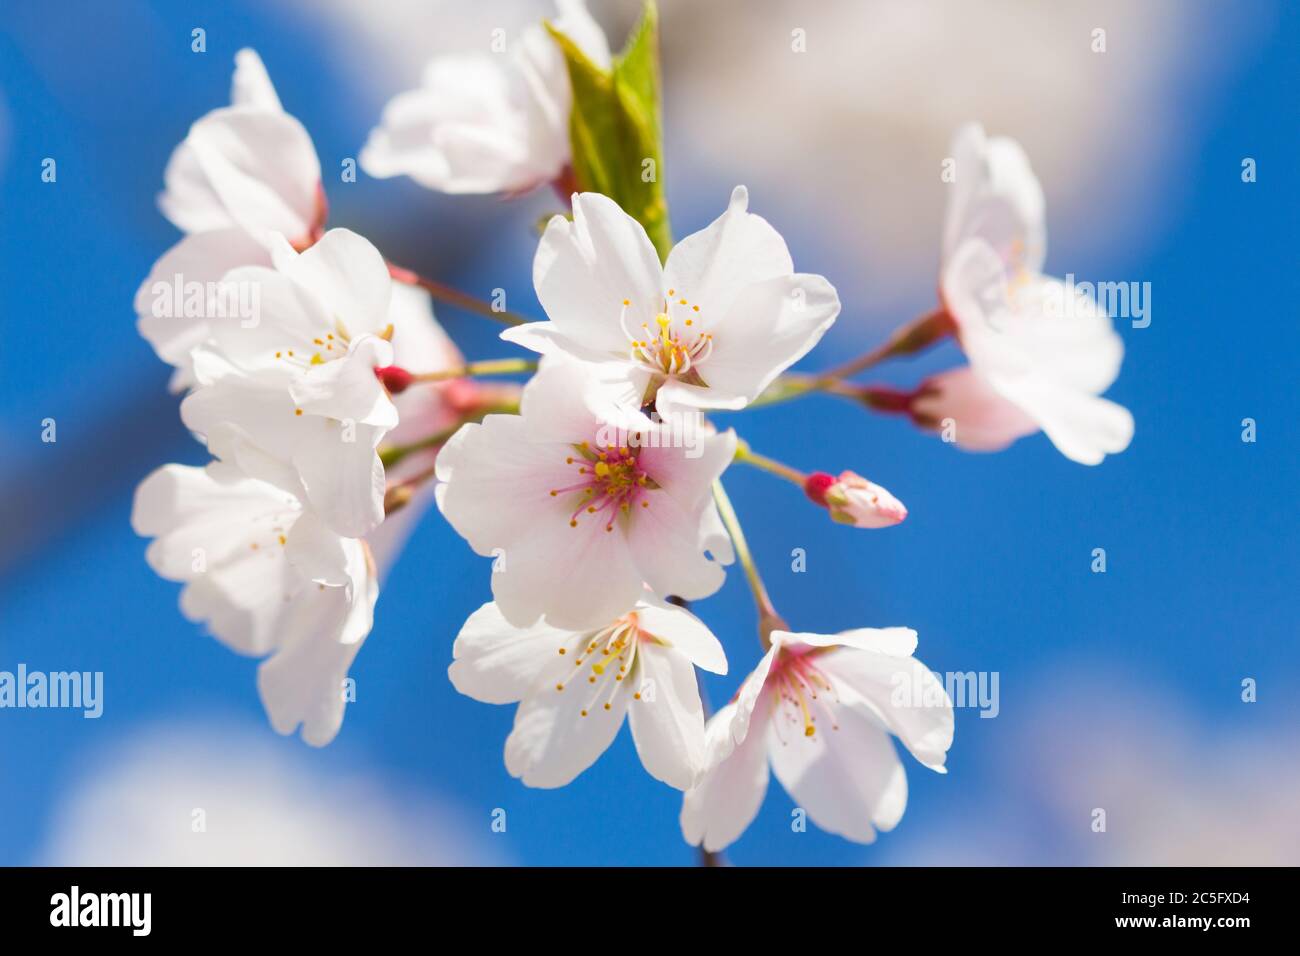 White cherry blossoms / Japanese sakura / Prunus serrulata against a vibrant blue sky, Washington, D.C., United States Stock Photo